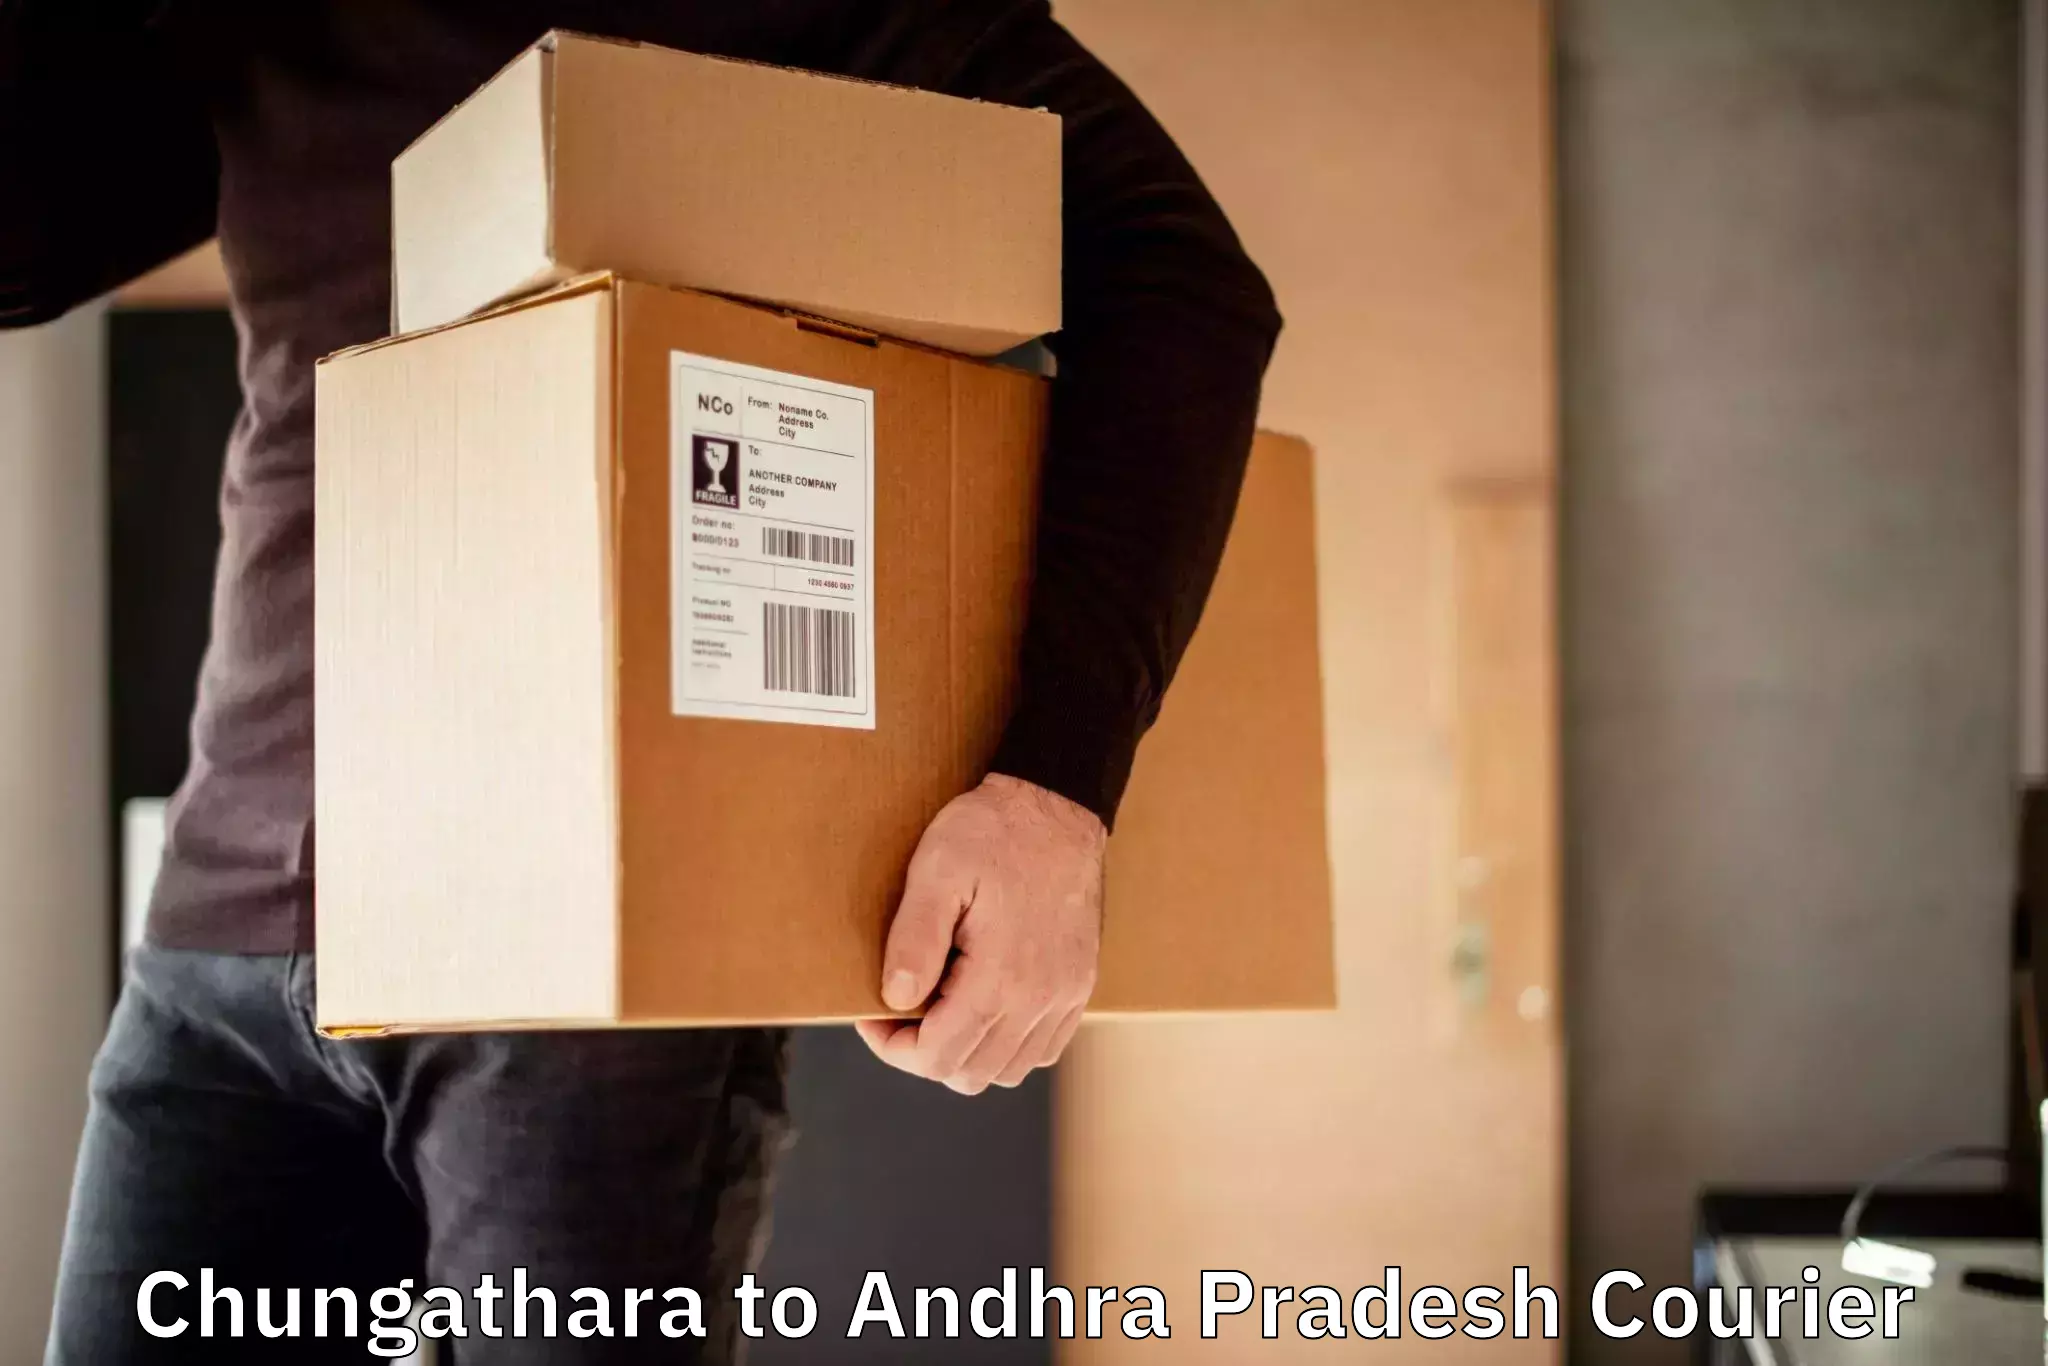 Express package handling Chungathara to Andhra Pradesh